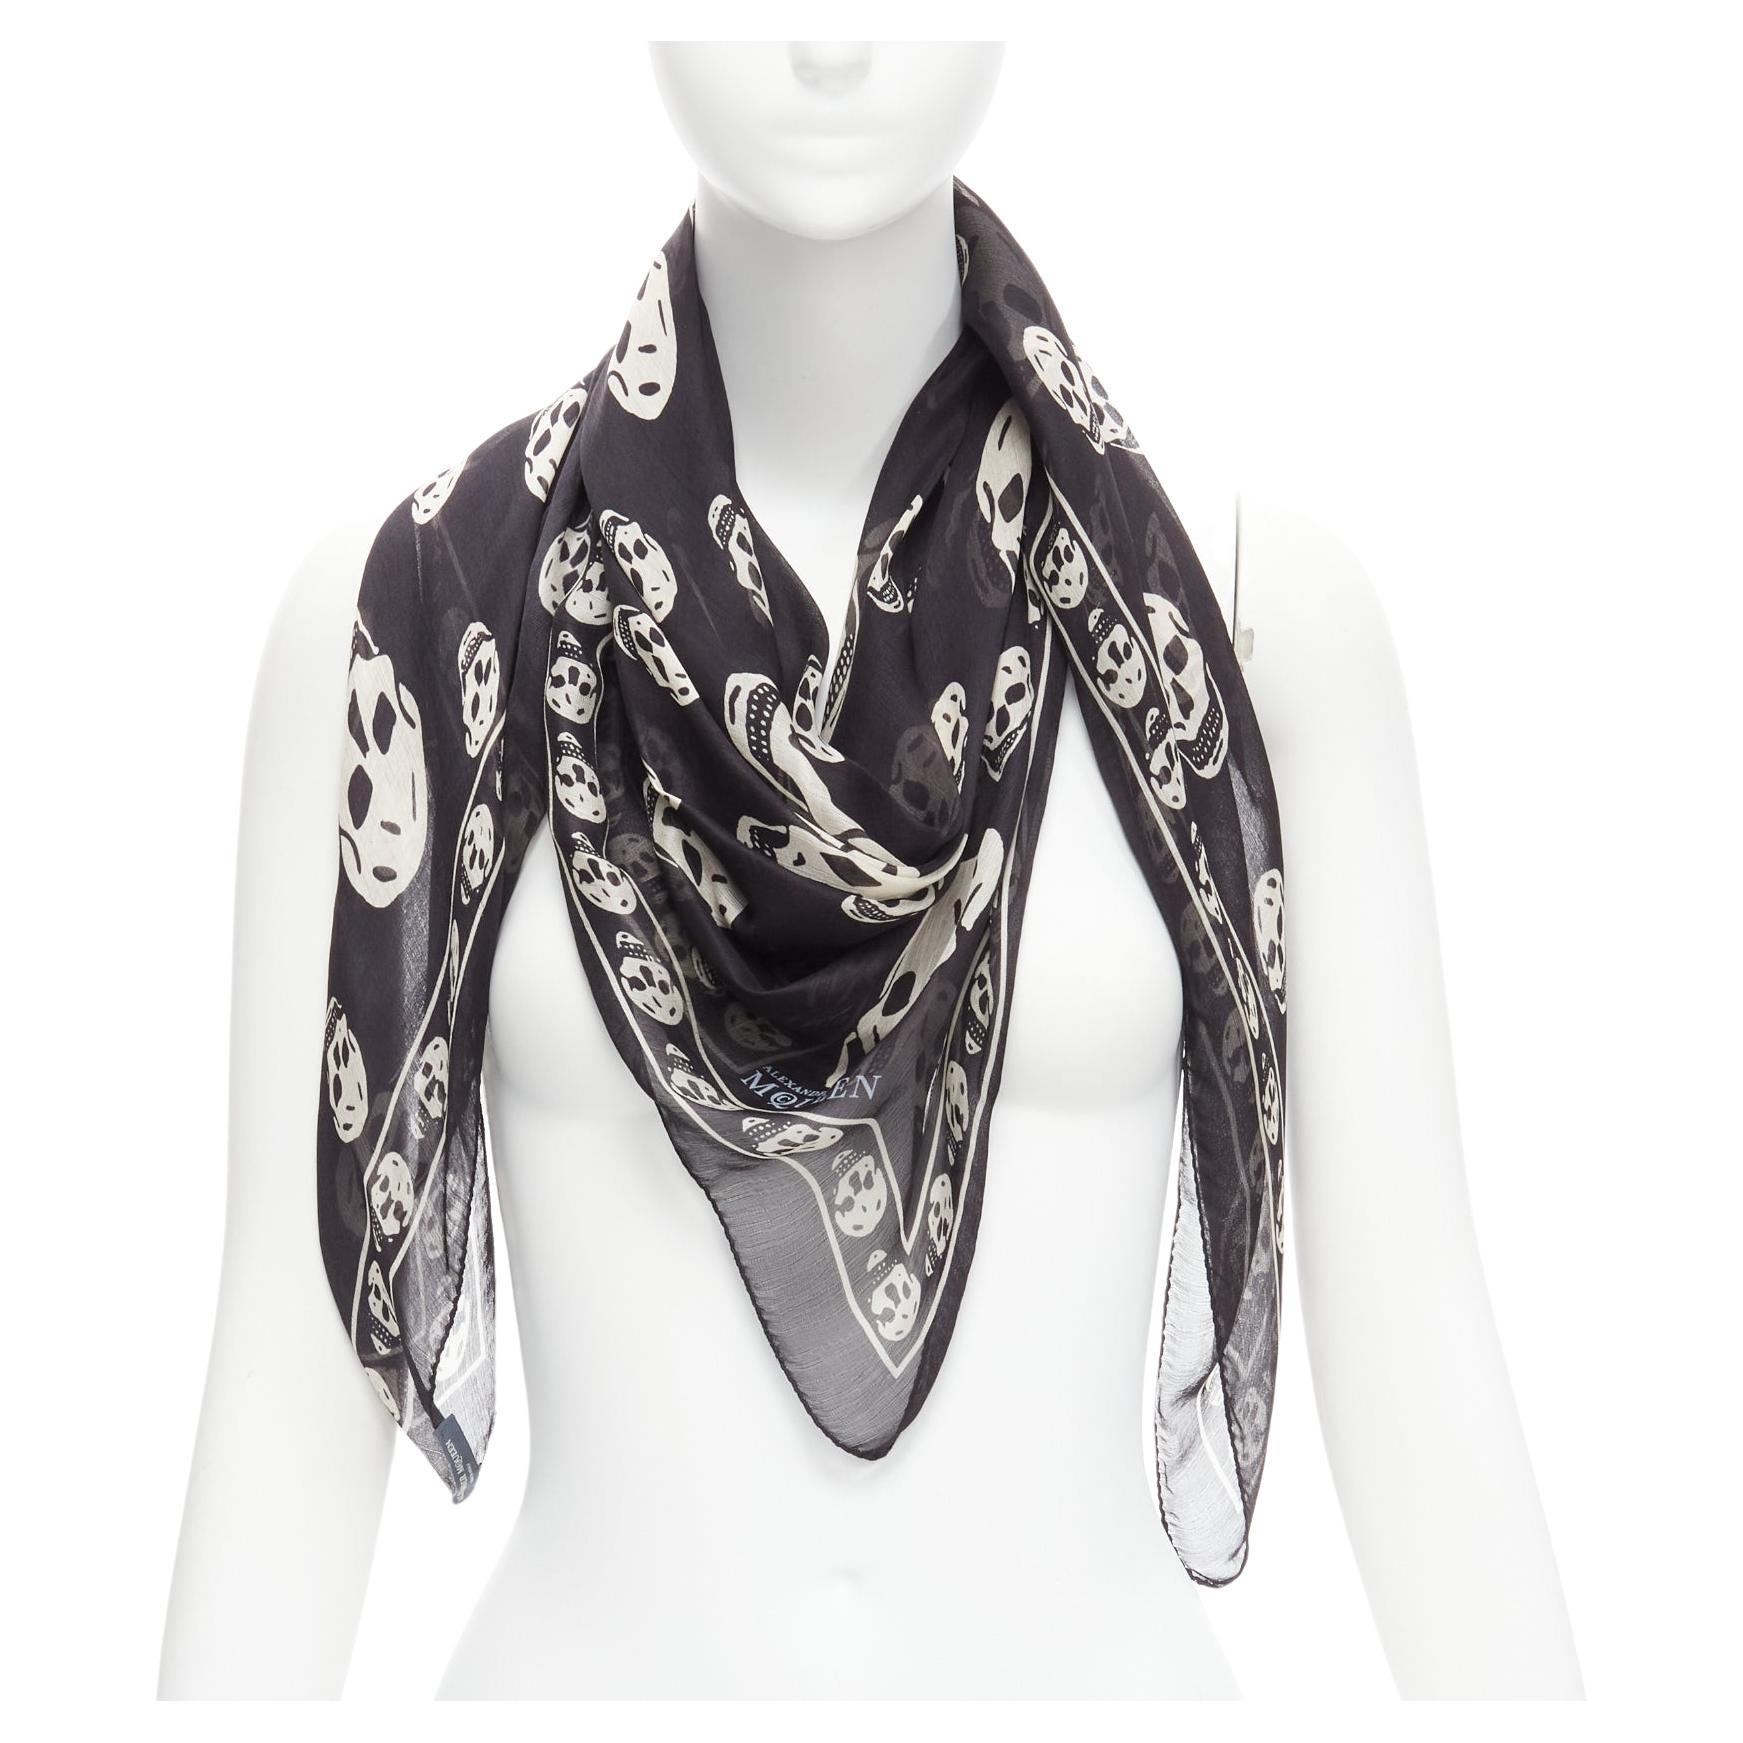 How can I wear an Alexander McQueen silk scarf?